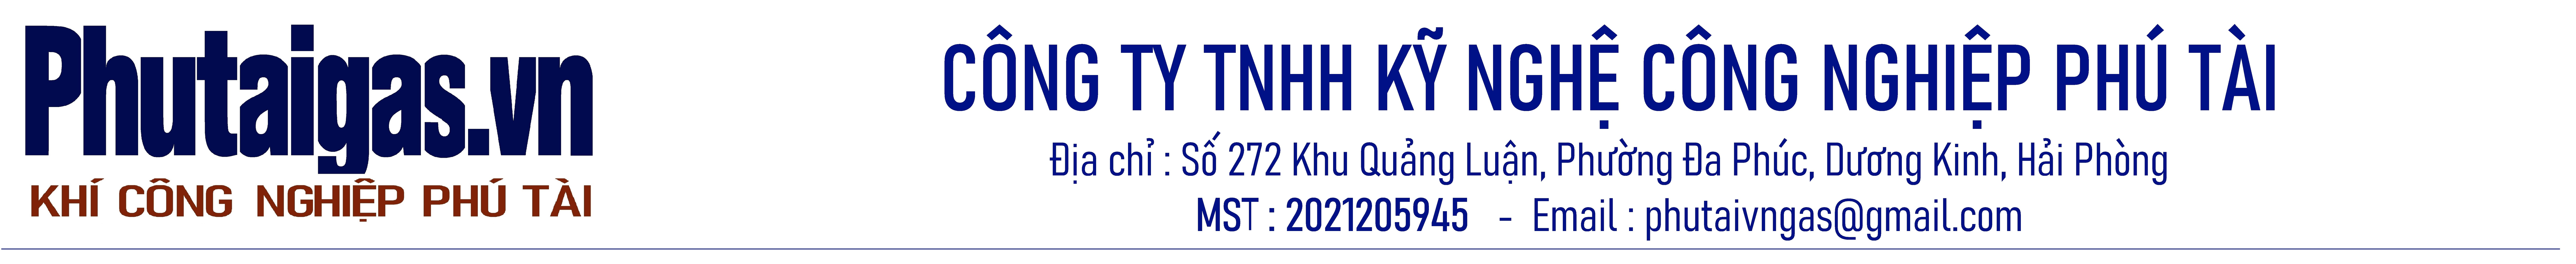 Công ty TNHH kỹ nghệ công nghiệp Phú Tài